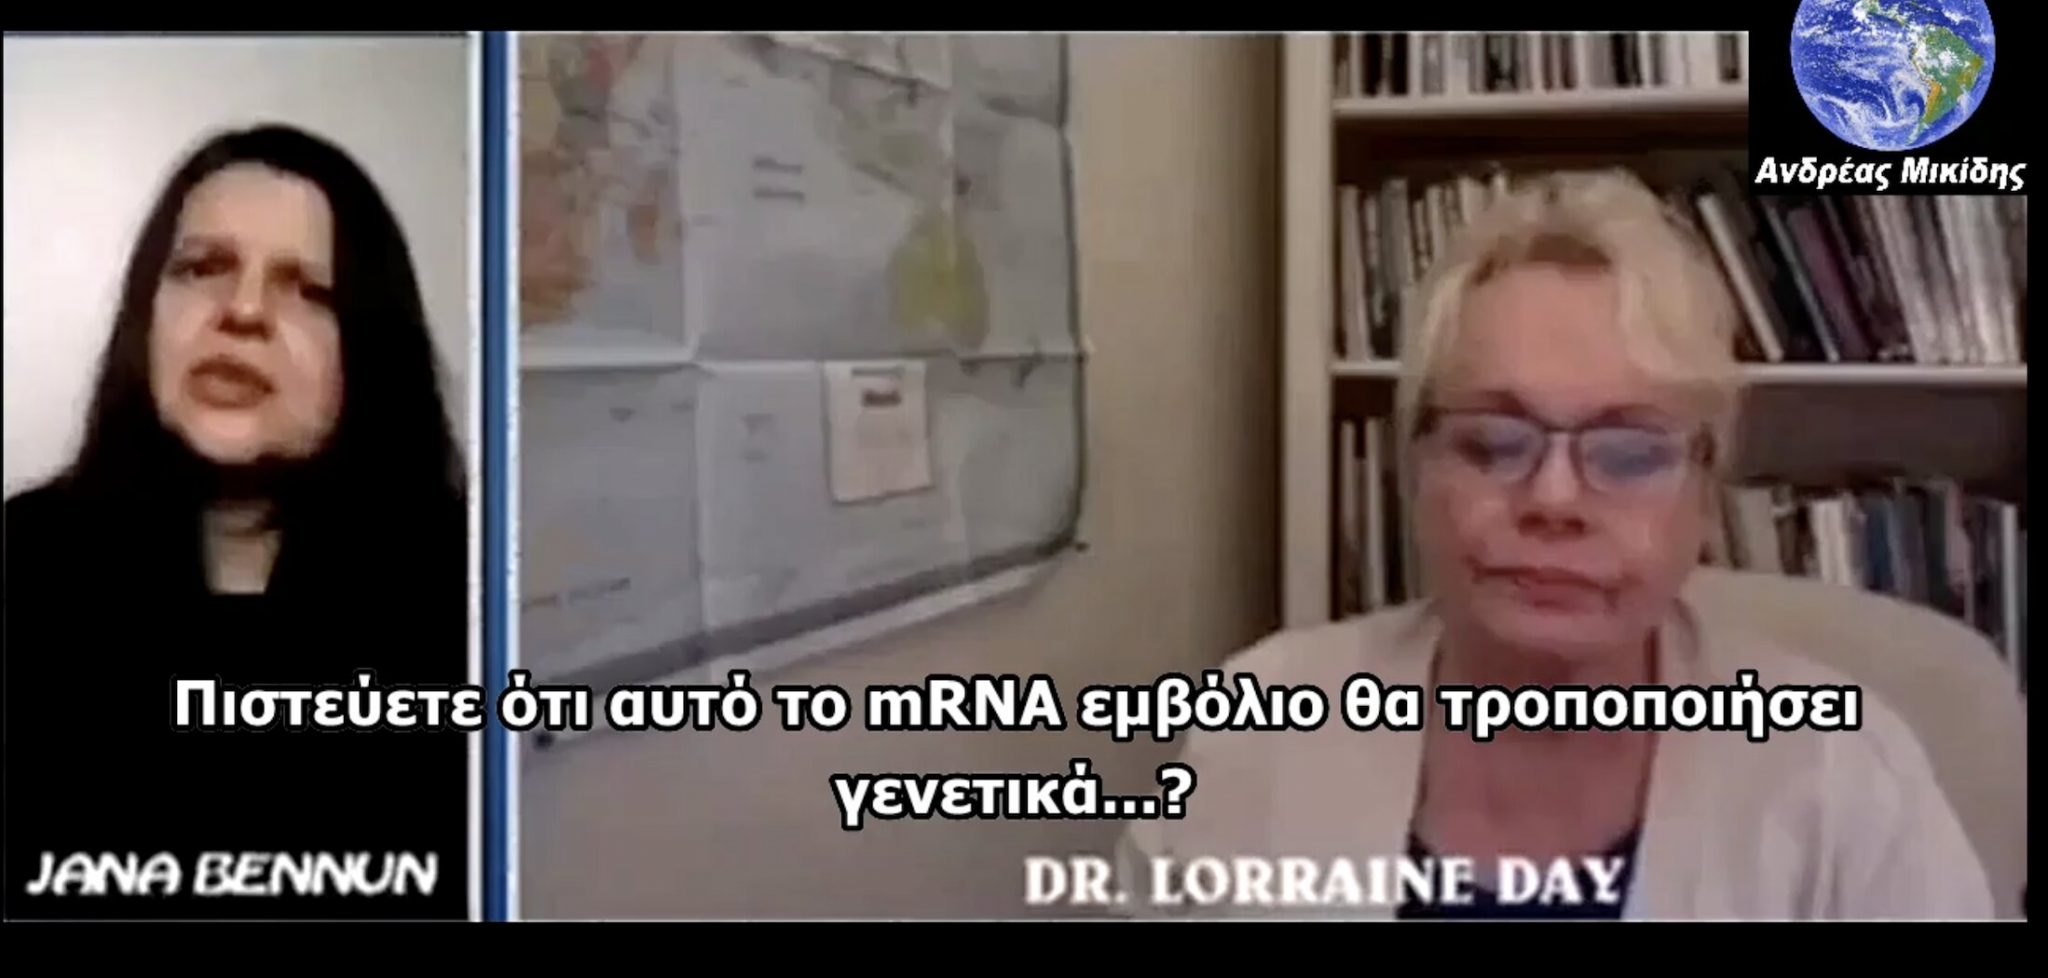 Δρ. LORRAINE DAY ”Ήδη σας εμβολιάζουν με το τεστ PCR” (ελληνικοί υποτίτλοι)